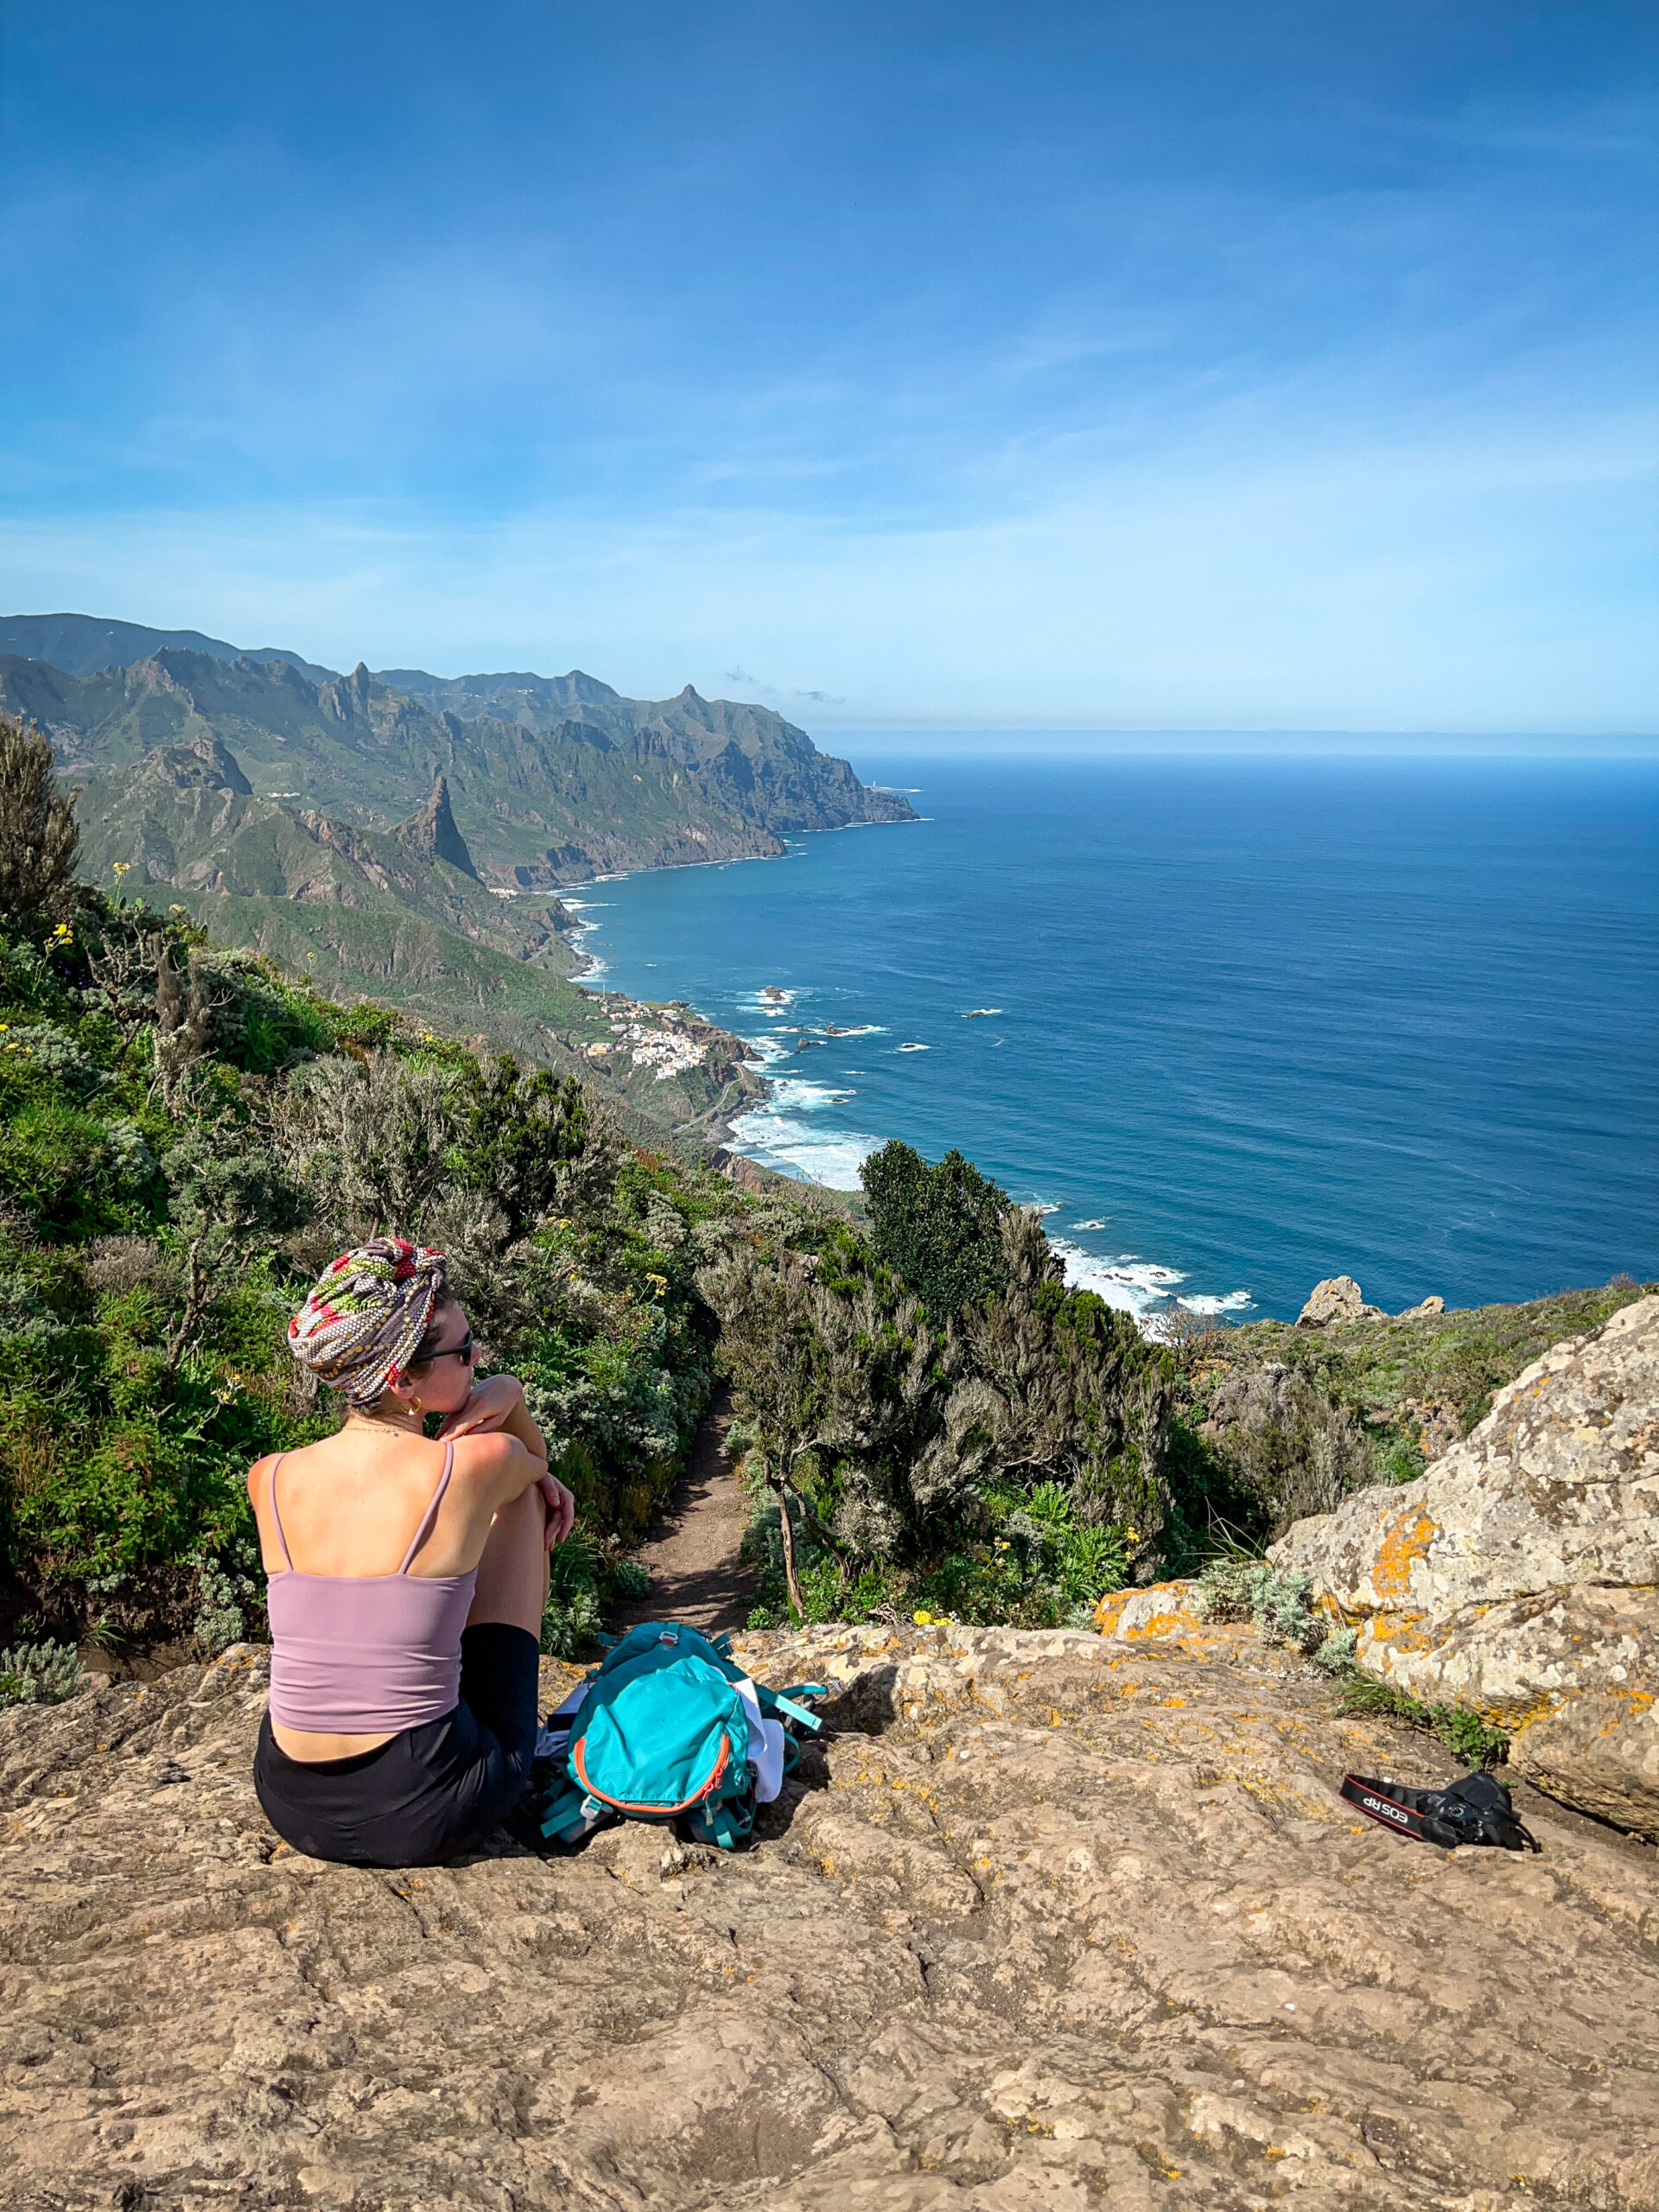 Ewa siedzi na punkcie widokowym na szlaku Benijo-El Draguillo, a przed nią widok na wybrzeże oceanu oraz miasteczko Taganana